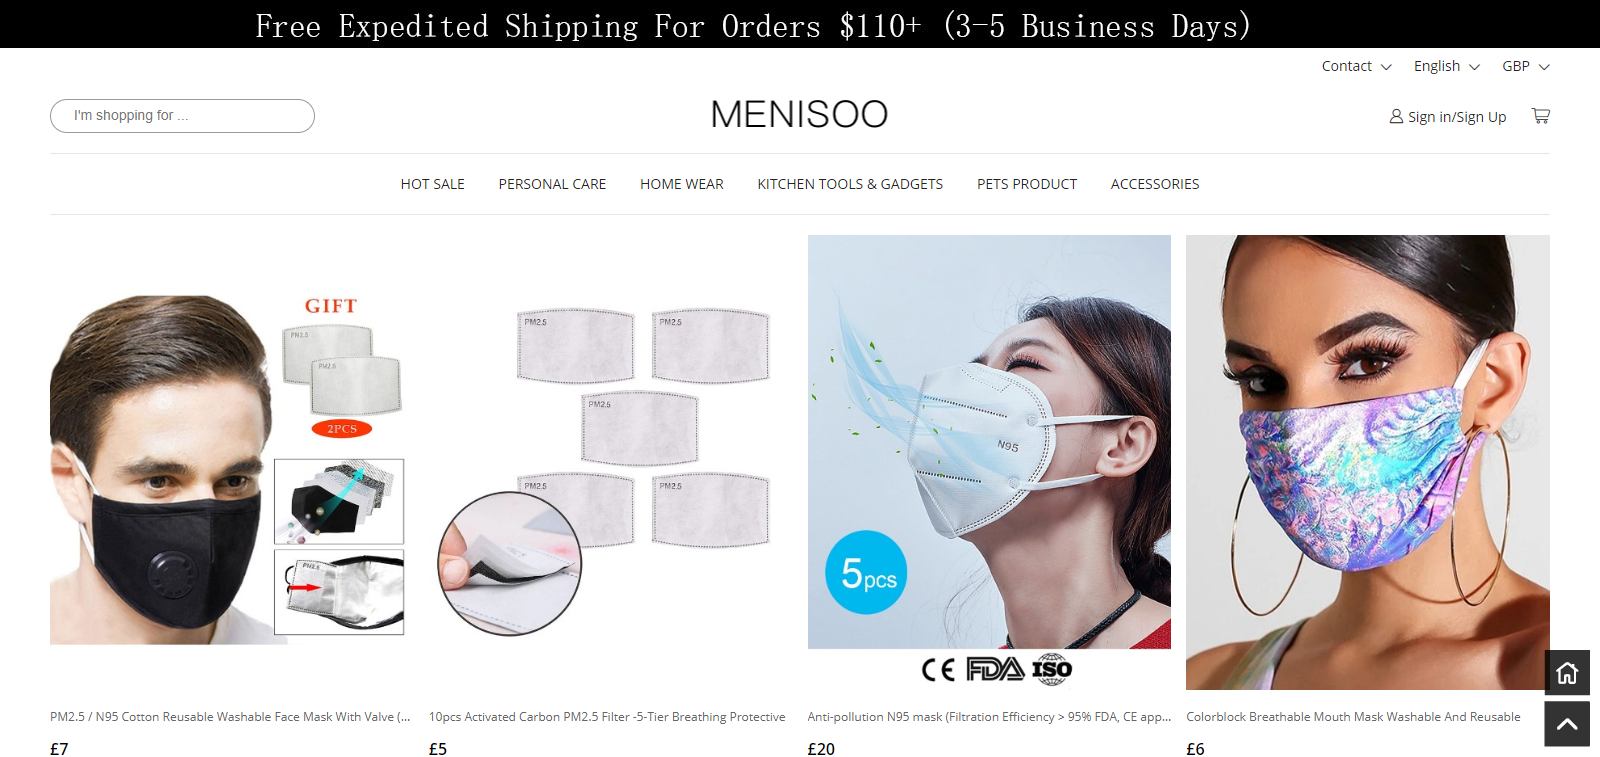 Menisoo Homepage Image